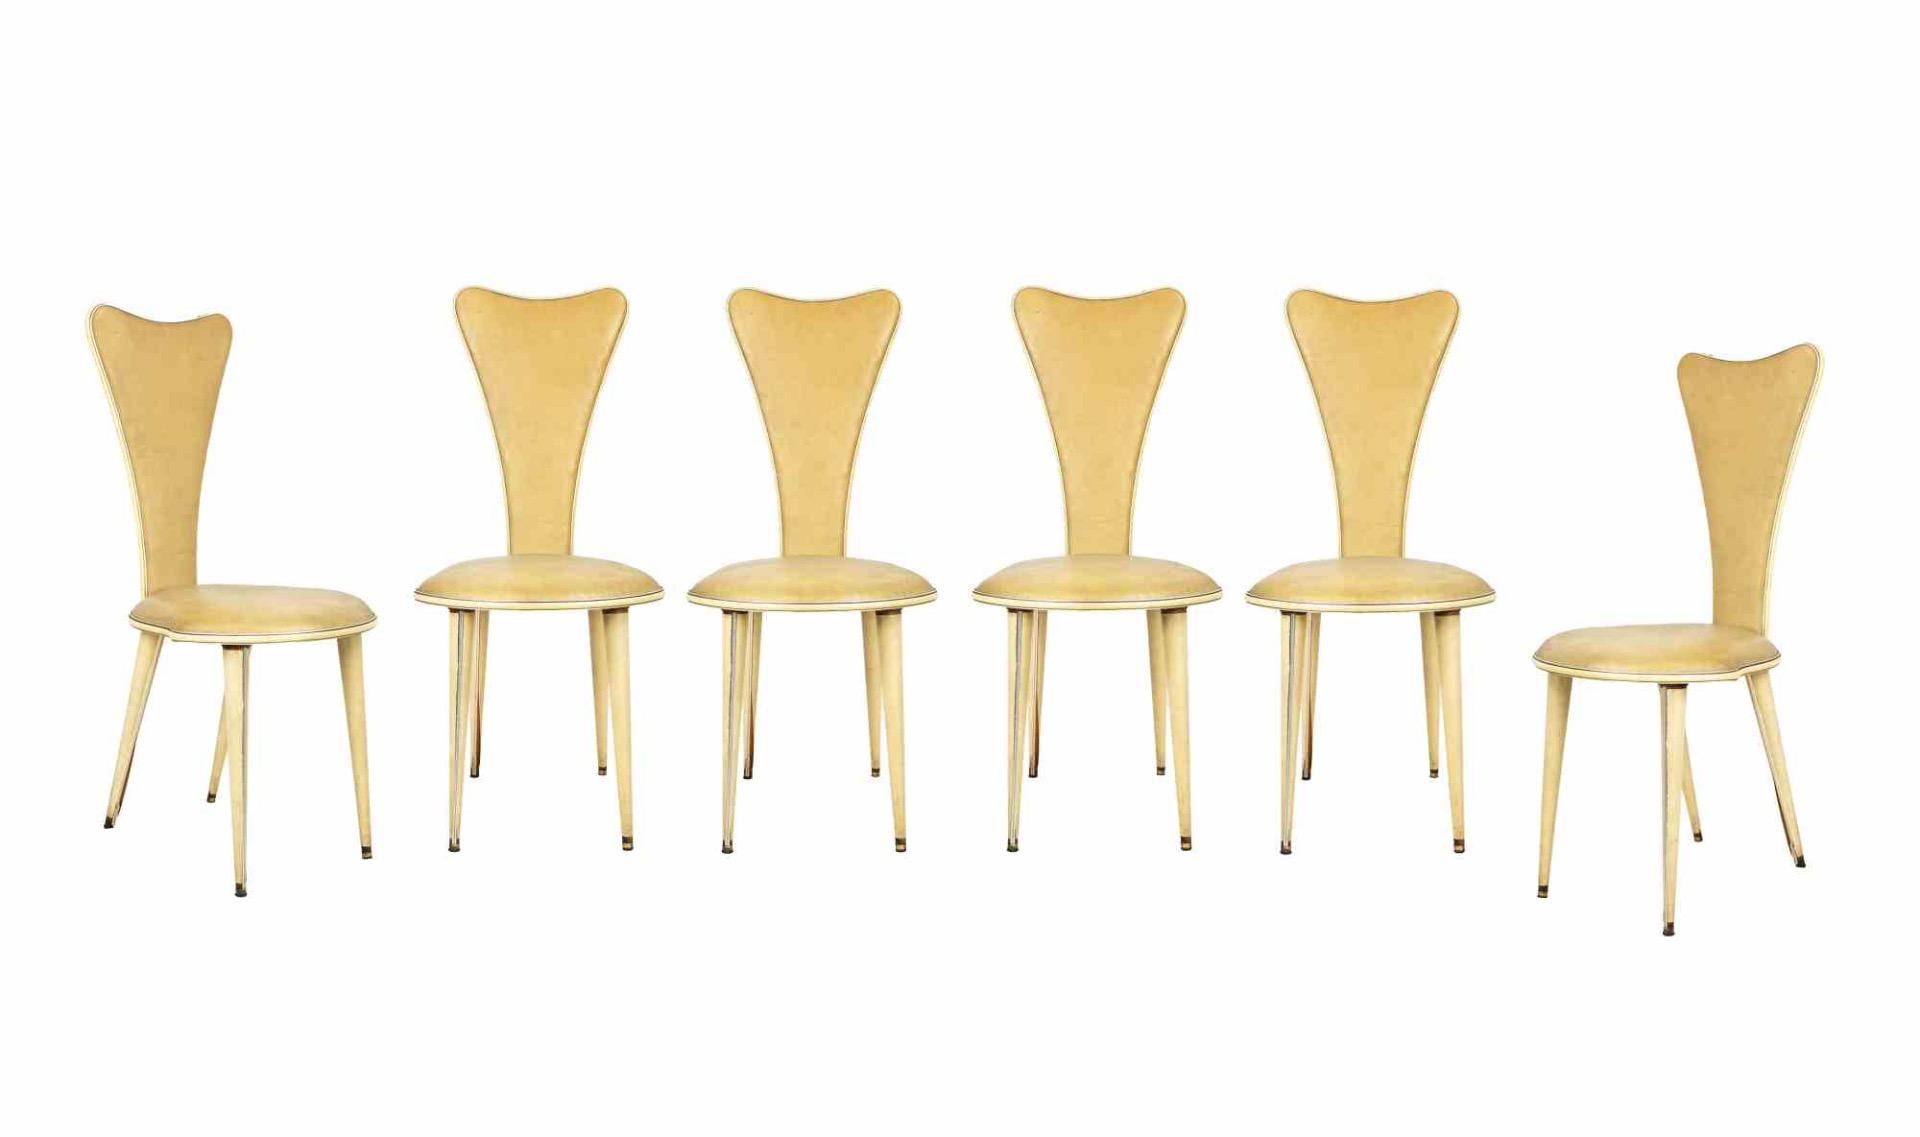 La table à manger et le jeu de six chaises sont des meubles design originaux réalisés par Umberto Mascagni dans les années 1950.

L'ensemble est composé d'une table à manger et de six chaises.

Fabriqué en Italie

Cadre en bois, revêtement en